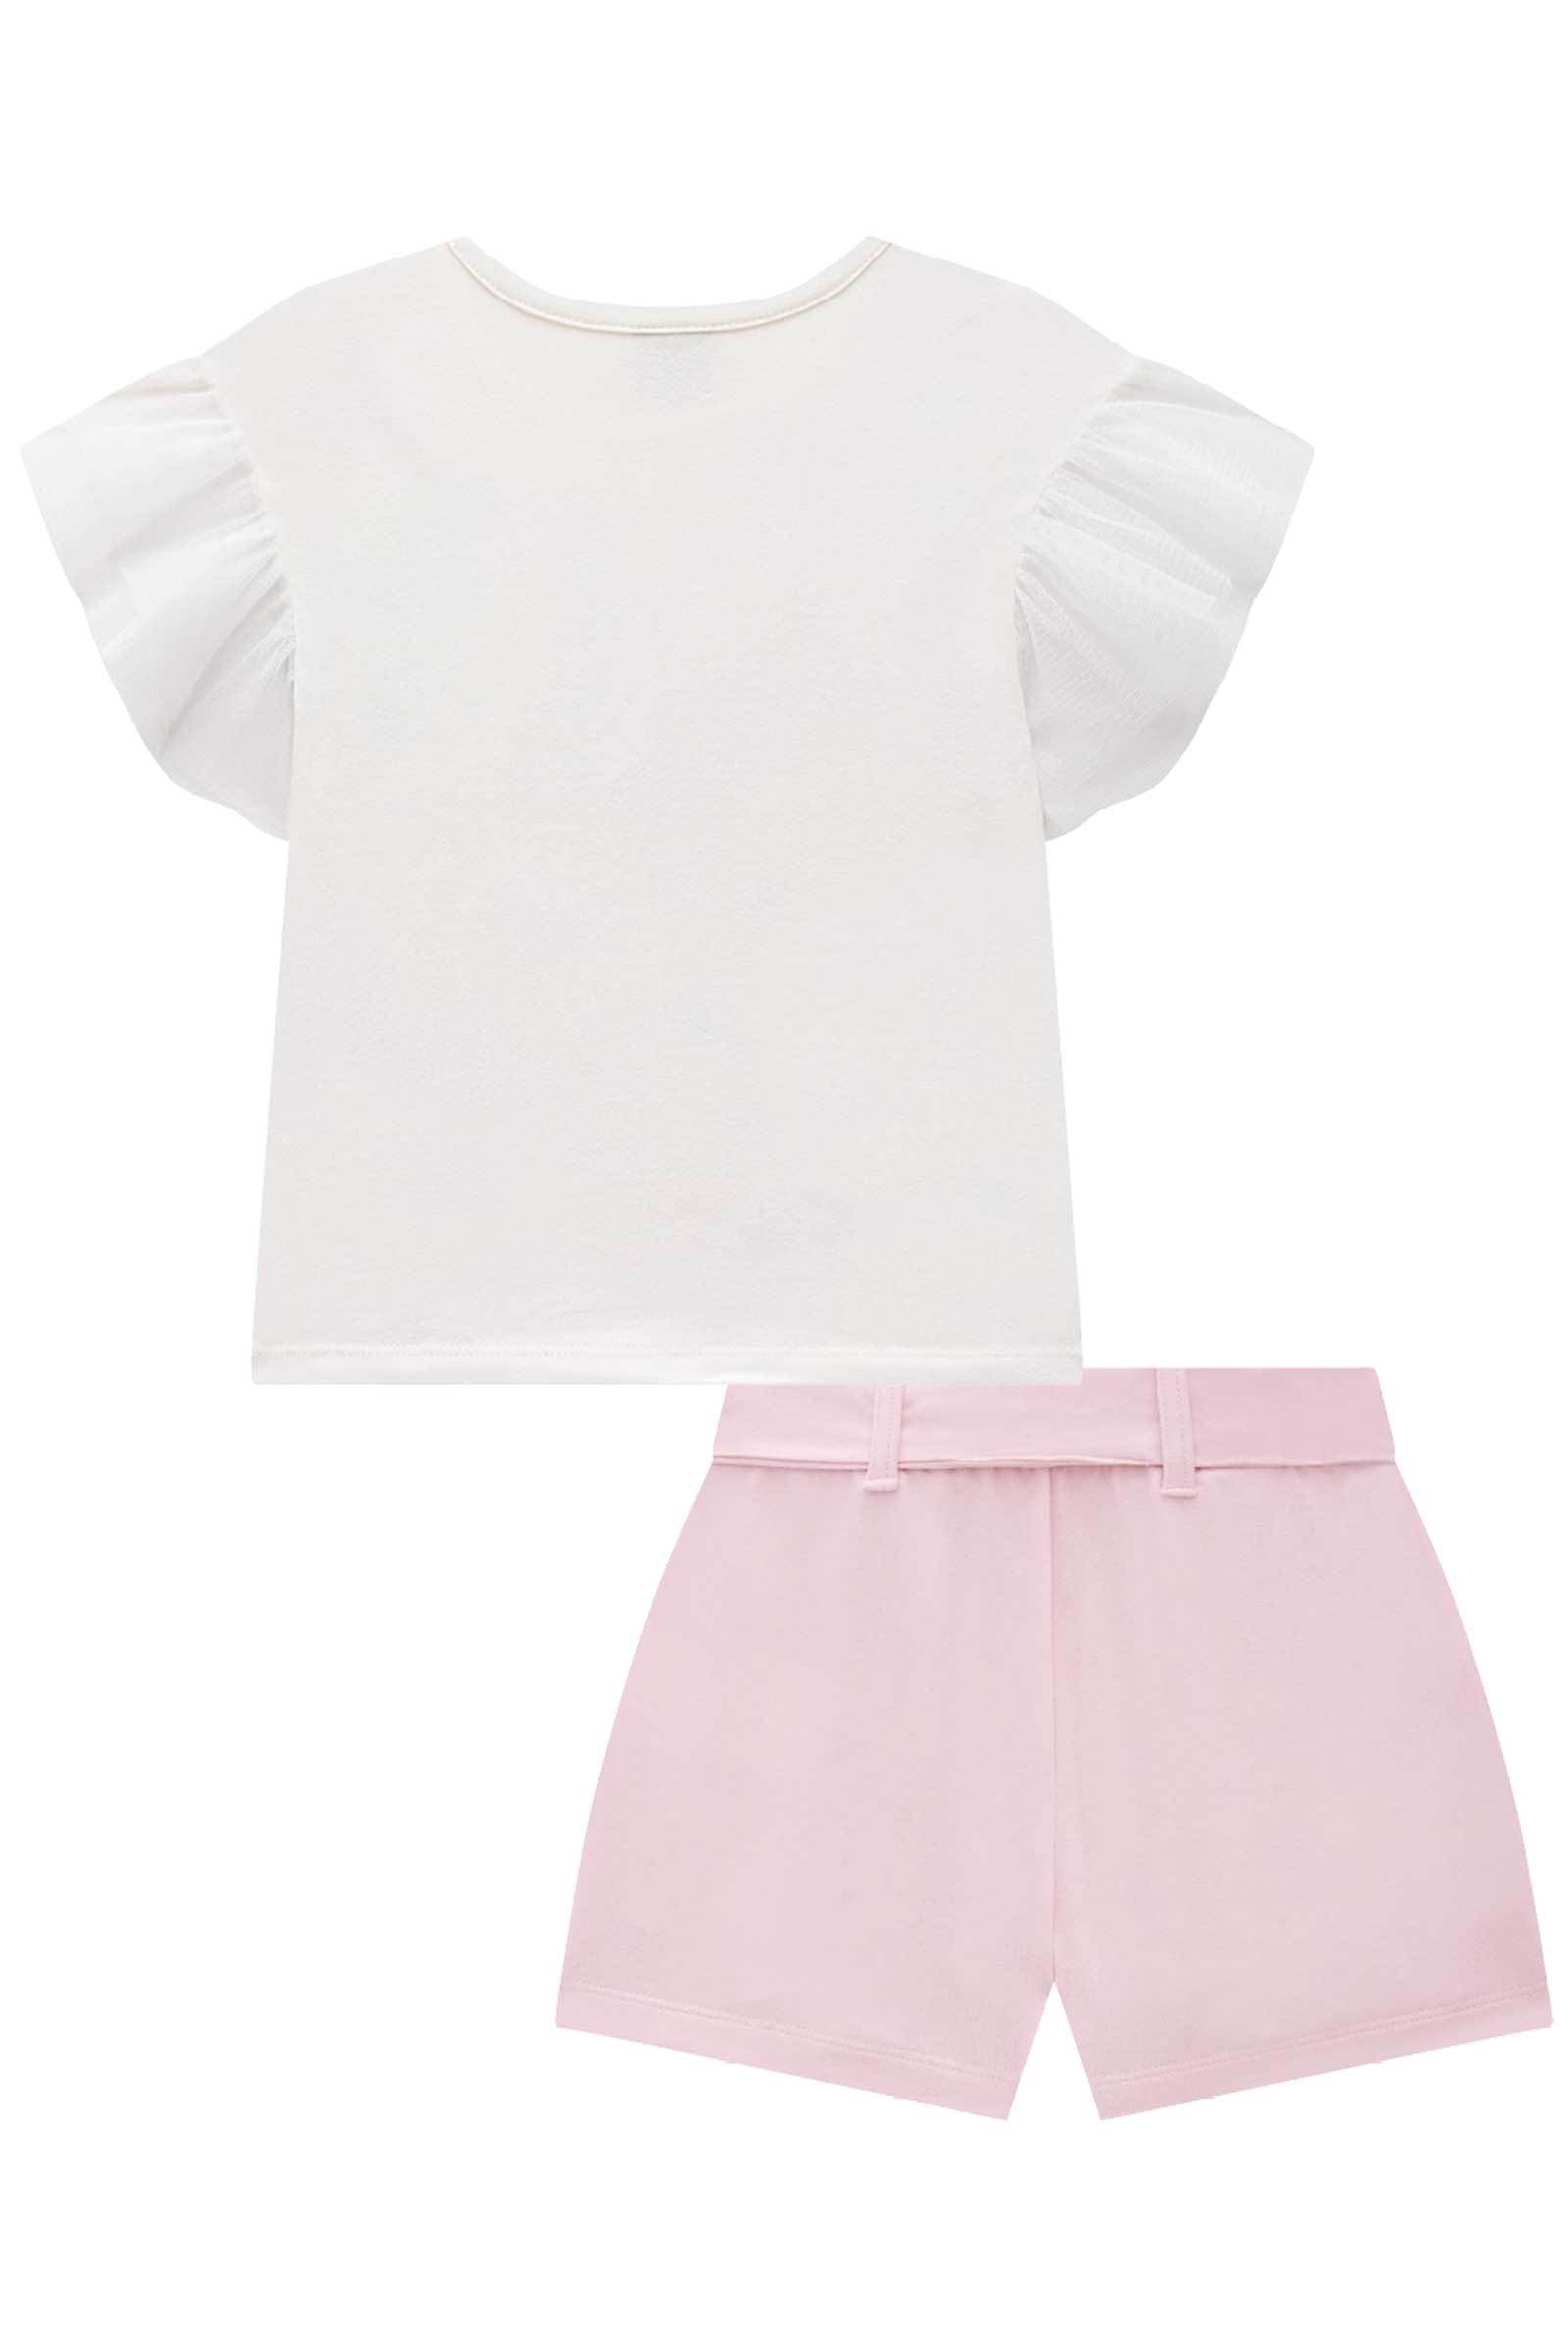 Conjunto de Blusa em Cotton e Tule com Shorts em Molevisco 74789 Infanti